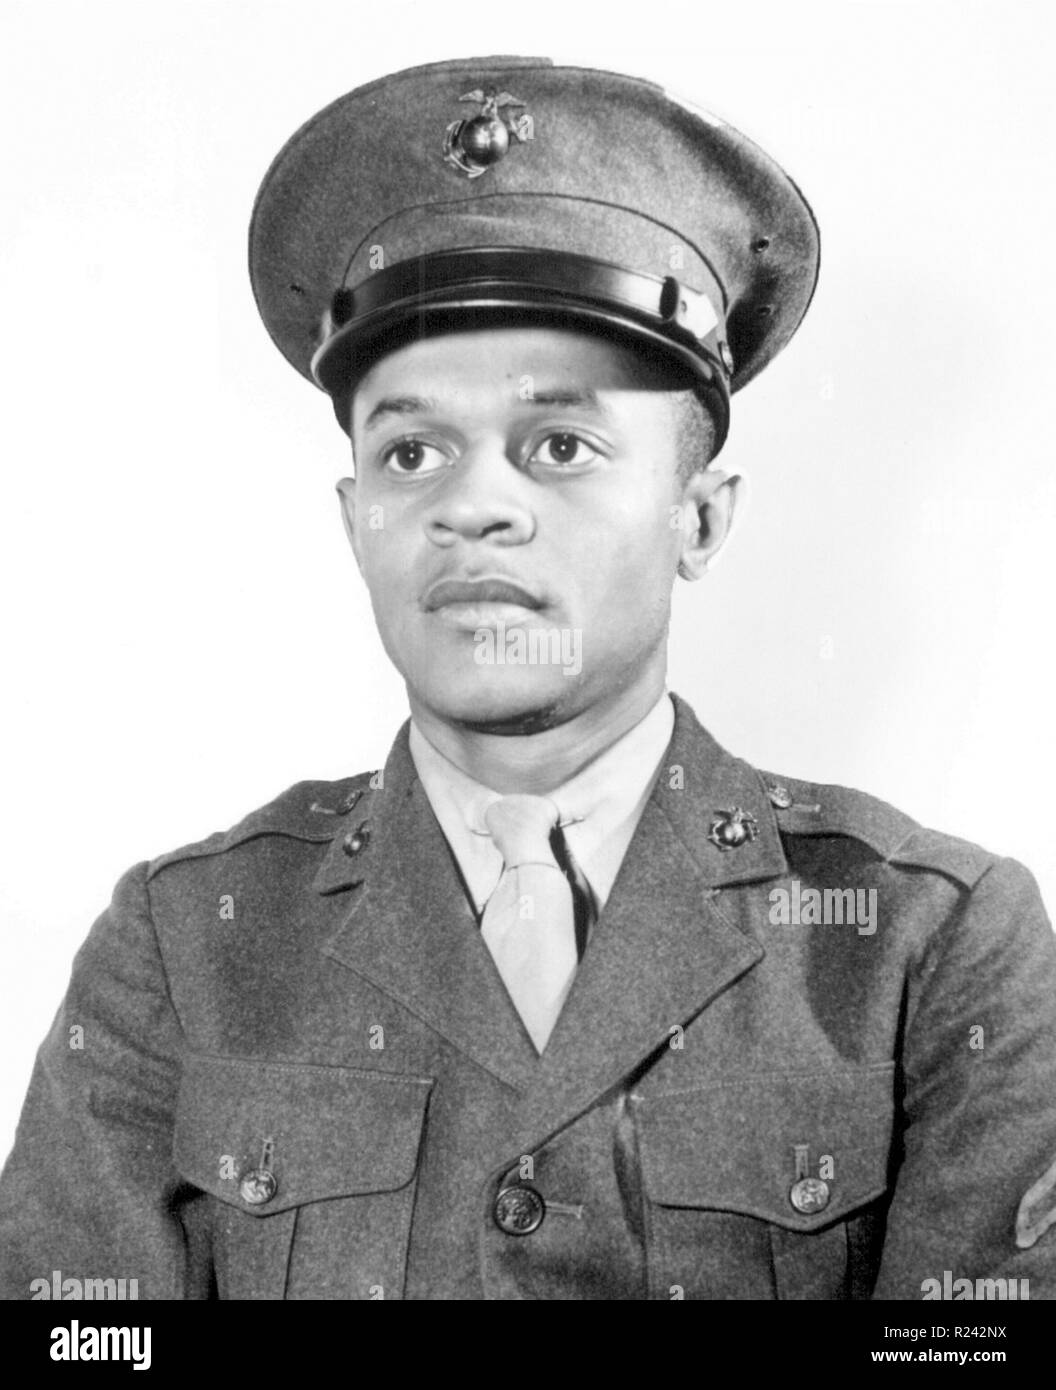 Howard P Perry, le premier Afro-américain à s'enrôler dans l'United States Marine Corps dans la Deuxième Guerre mondiale 1942 Banque D'Images